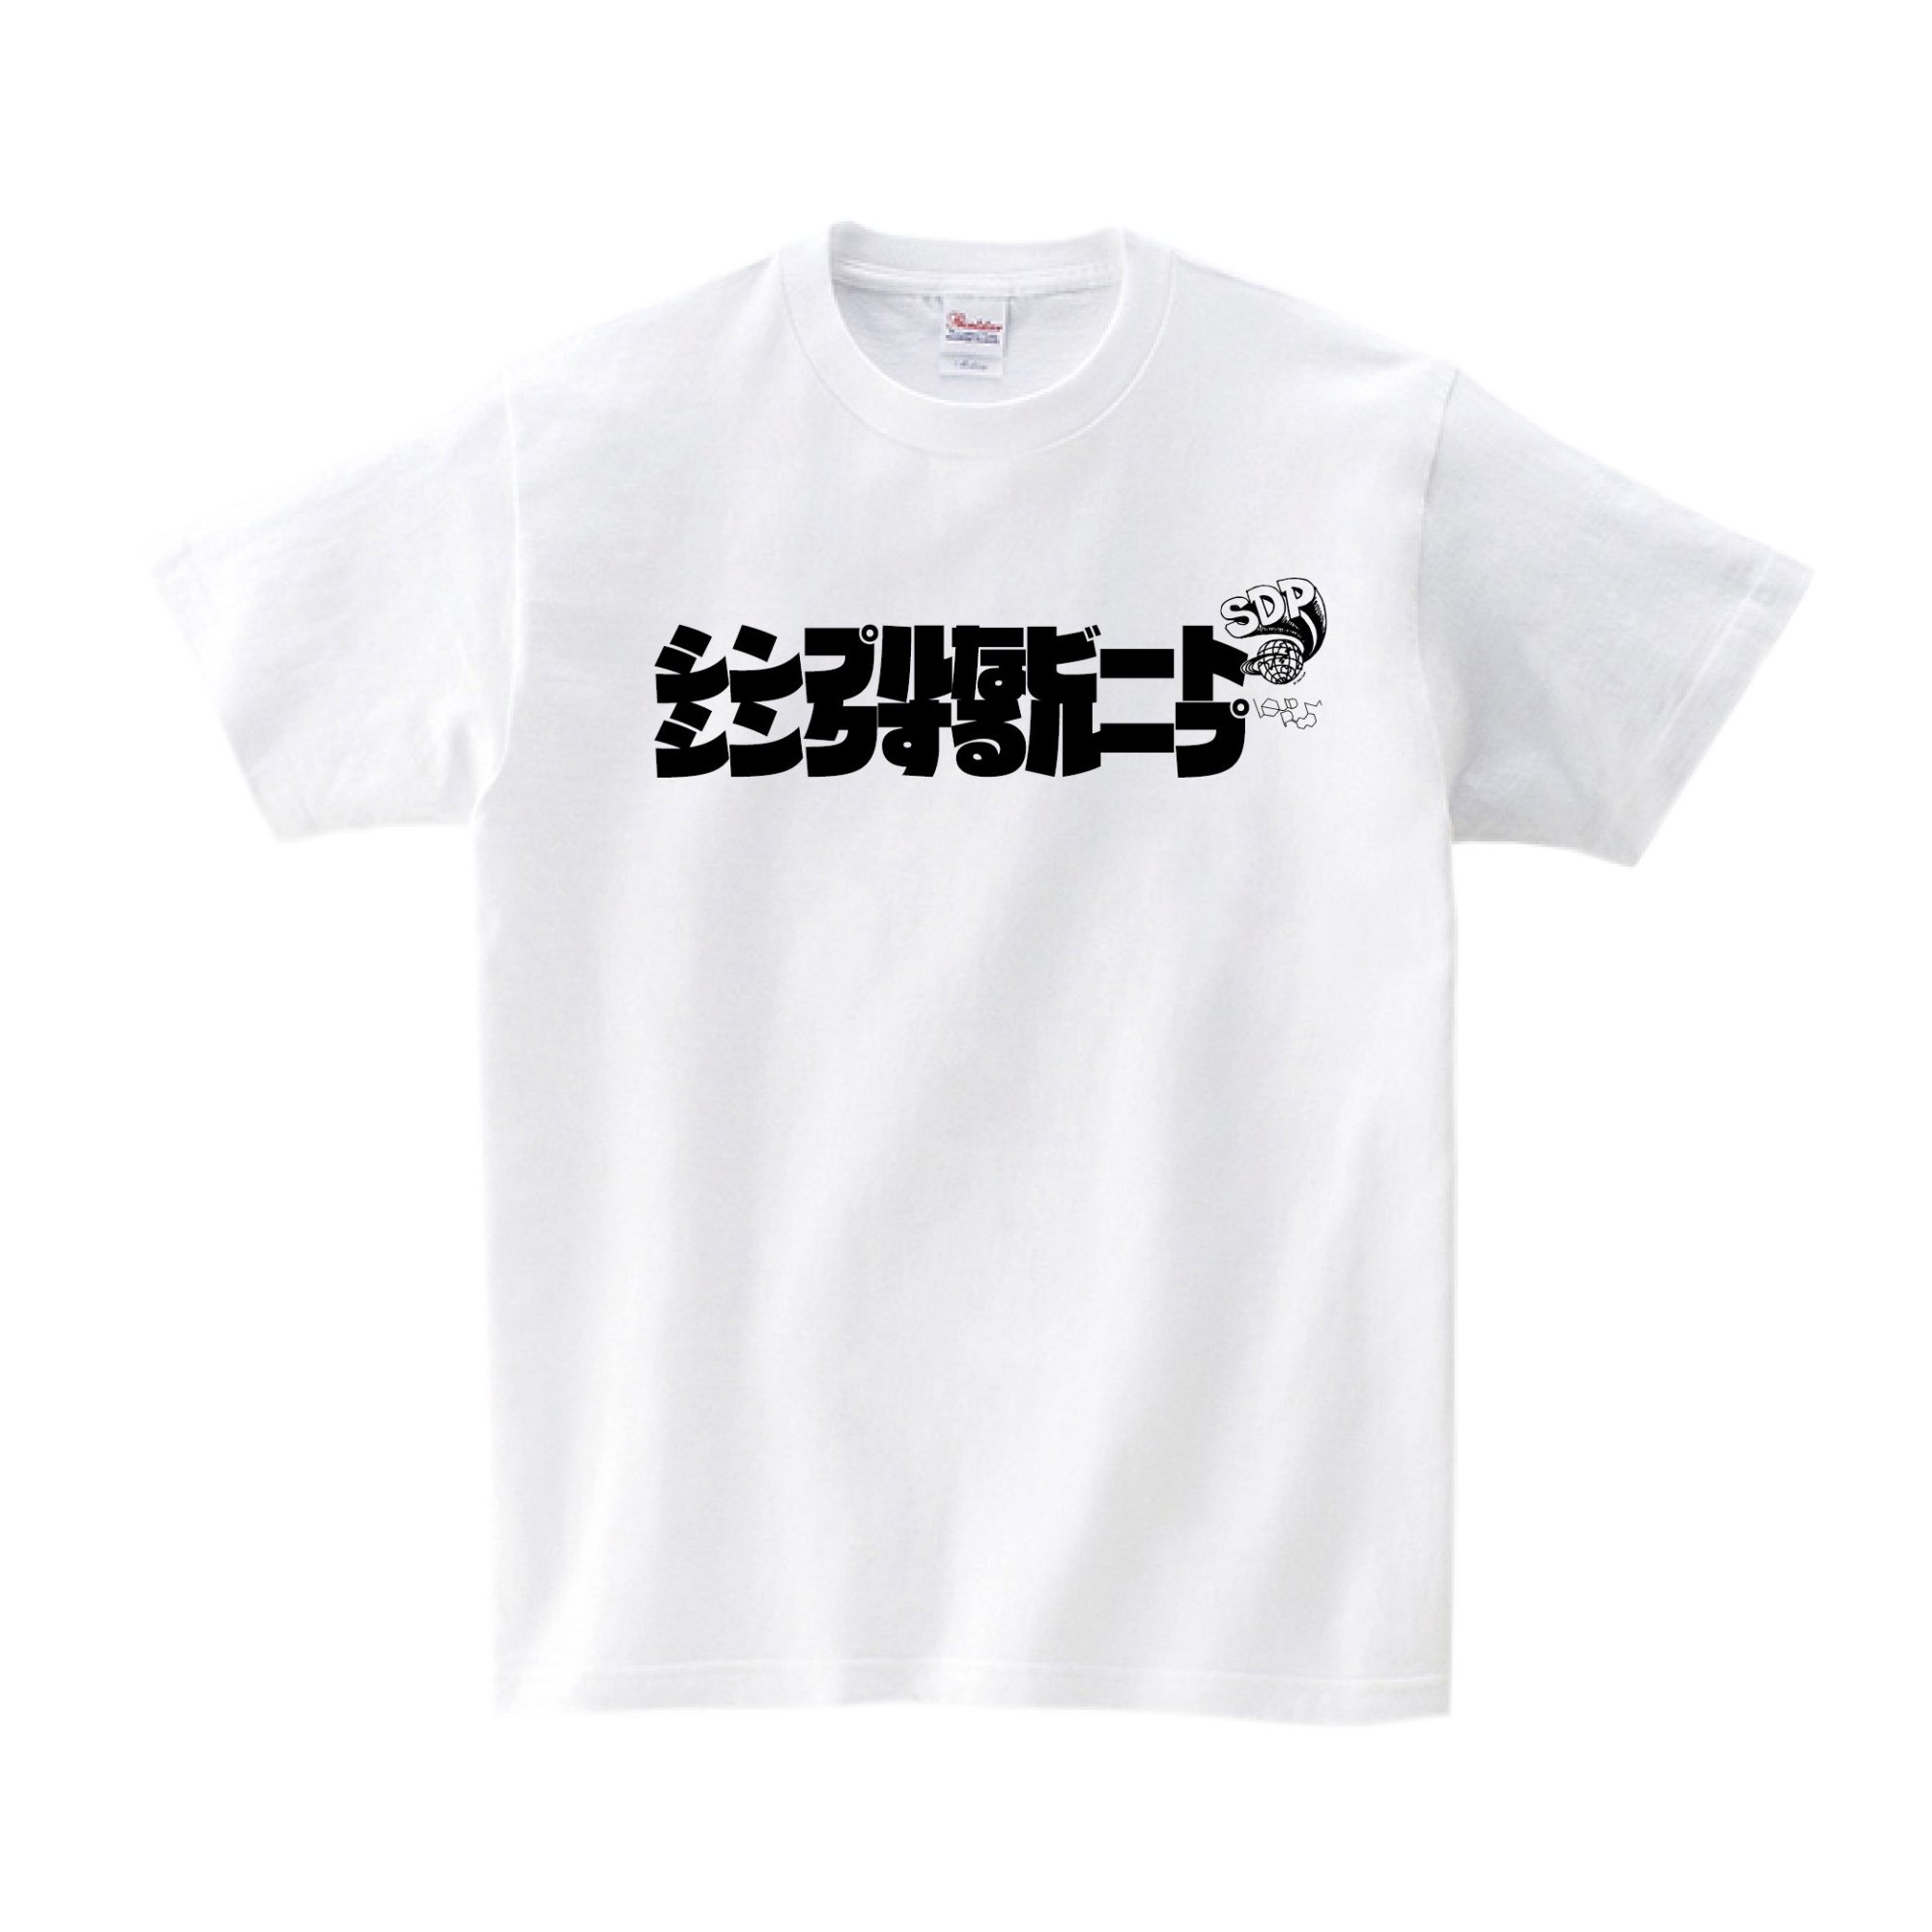 【新品未使用】スチャダラパー Tシャツ